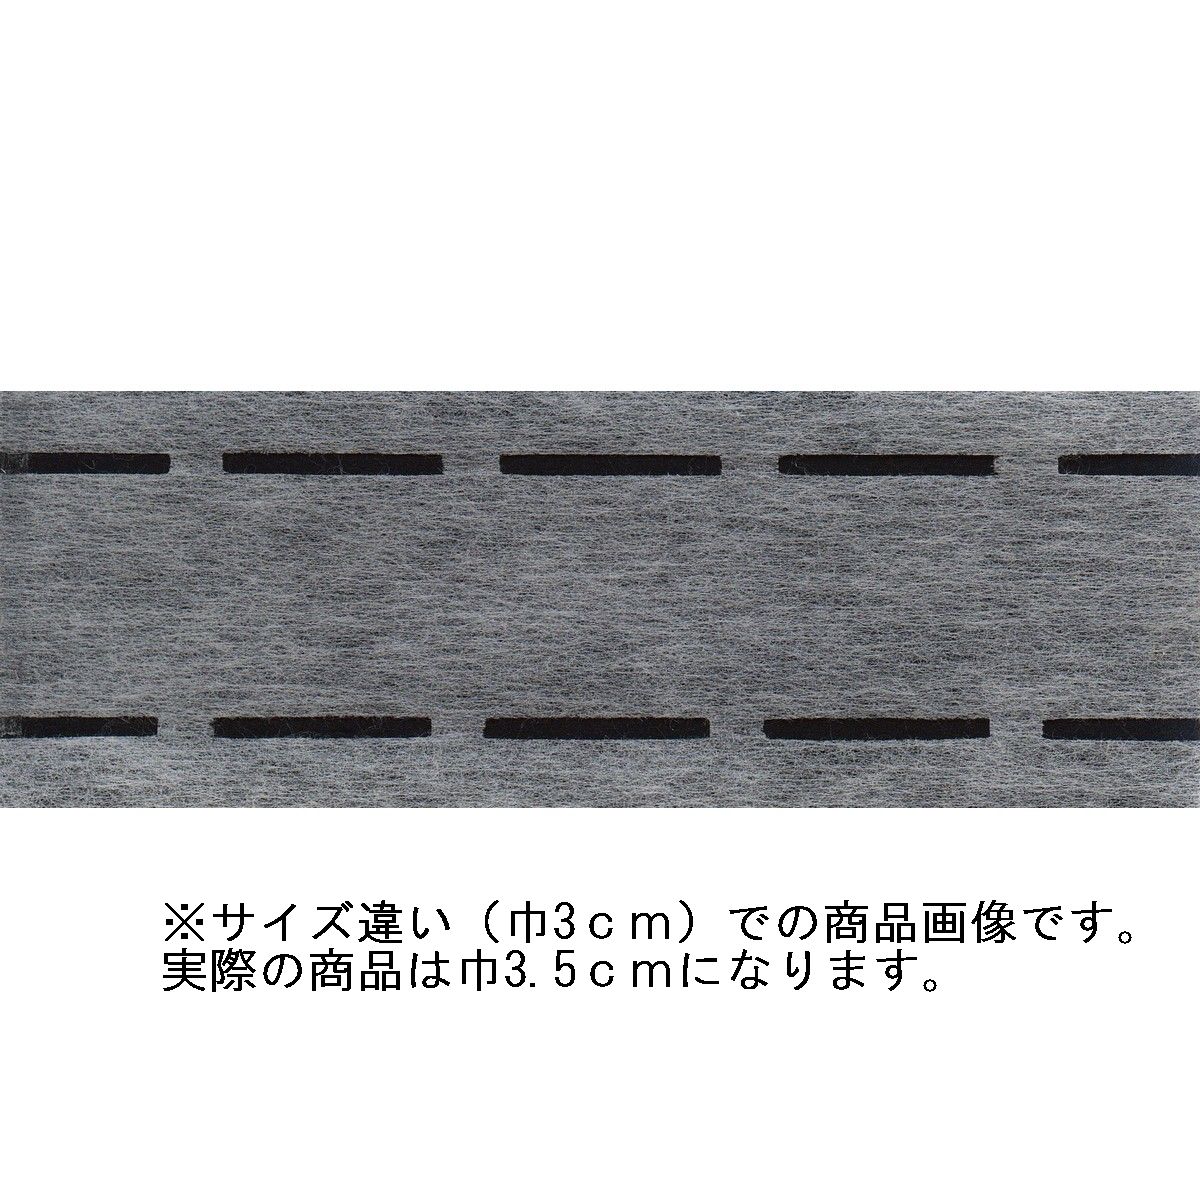 激安特価 キルト綿つなぎテープ 25mm×25m WT25 生地・芯地 手芸用品 手作り キルト綿 材料 裁縫材料 